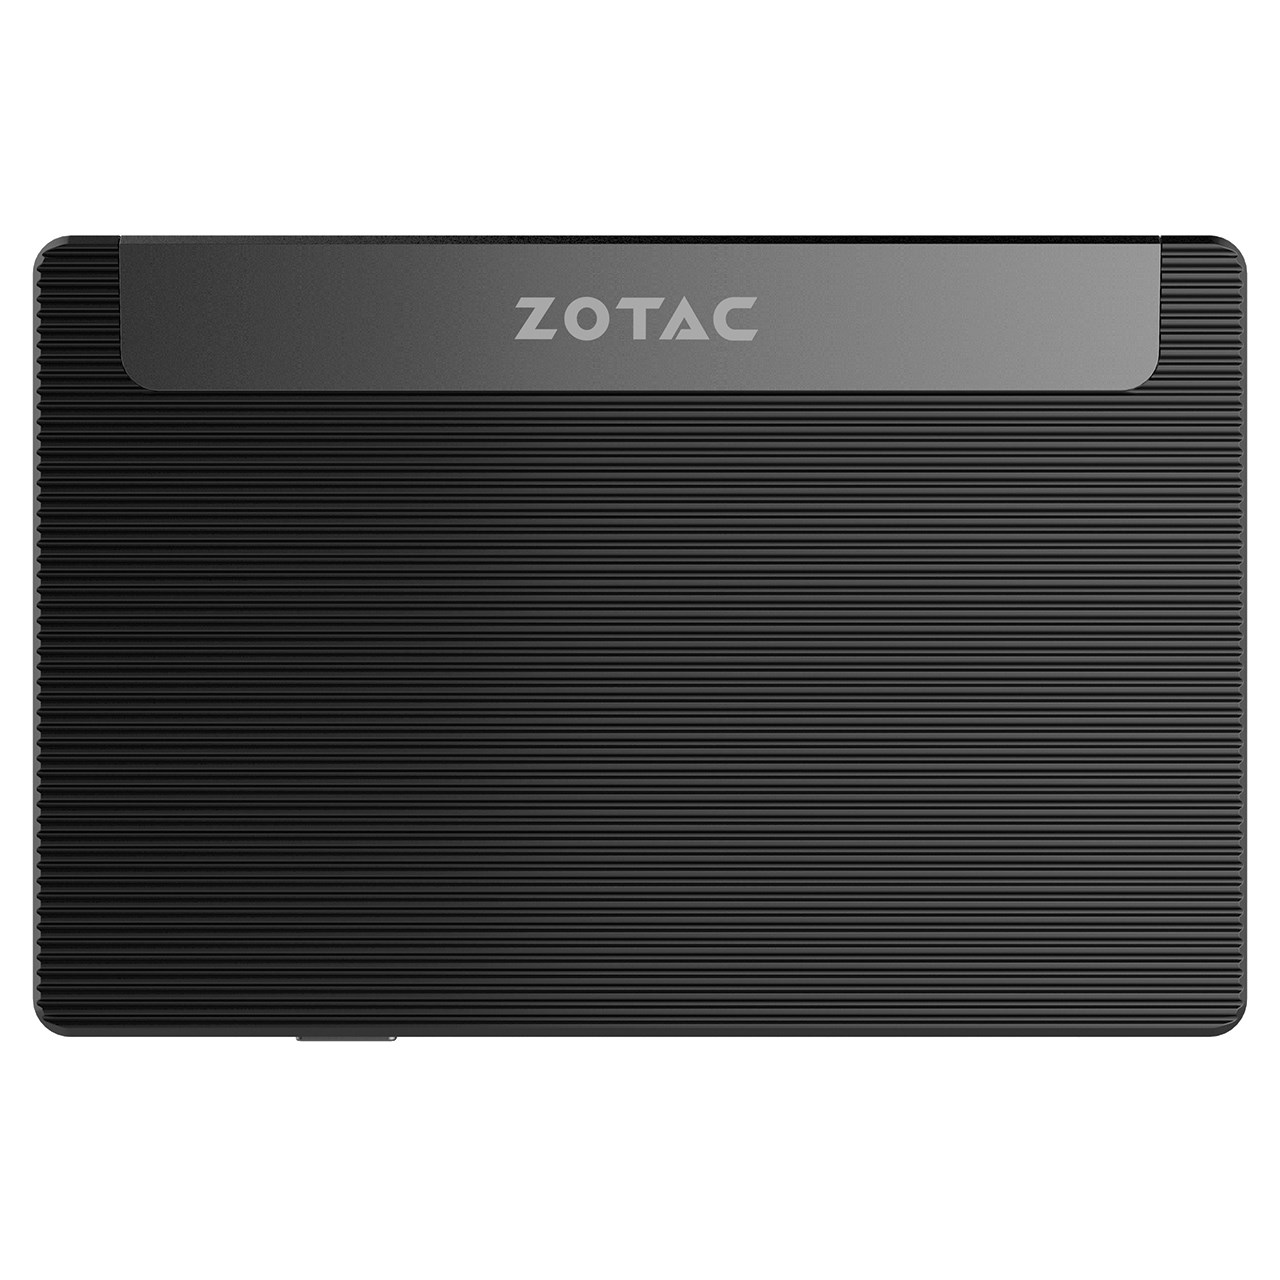 کامپیوتر کوچک زوتک  مدل ZBOX-PI225-W3B